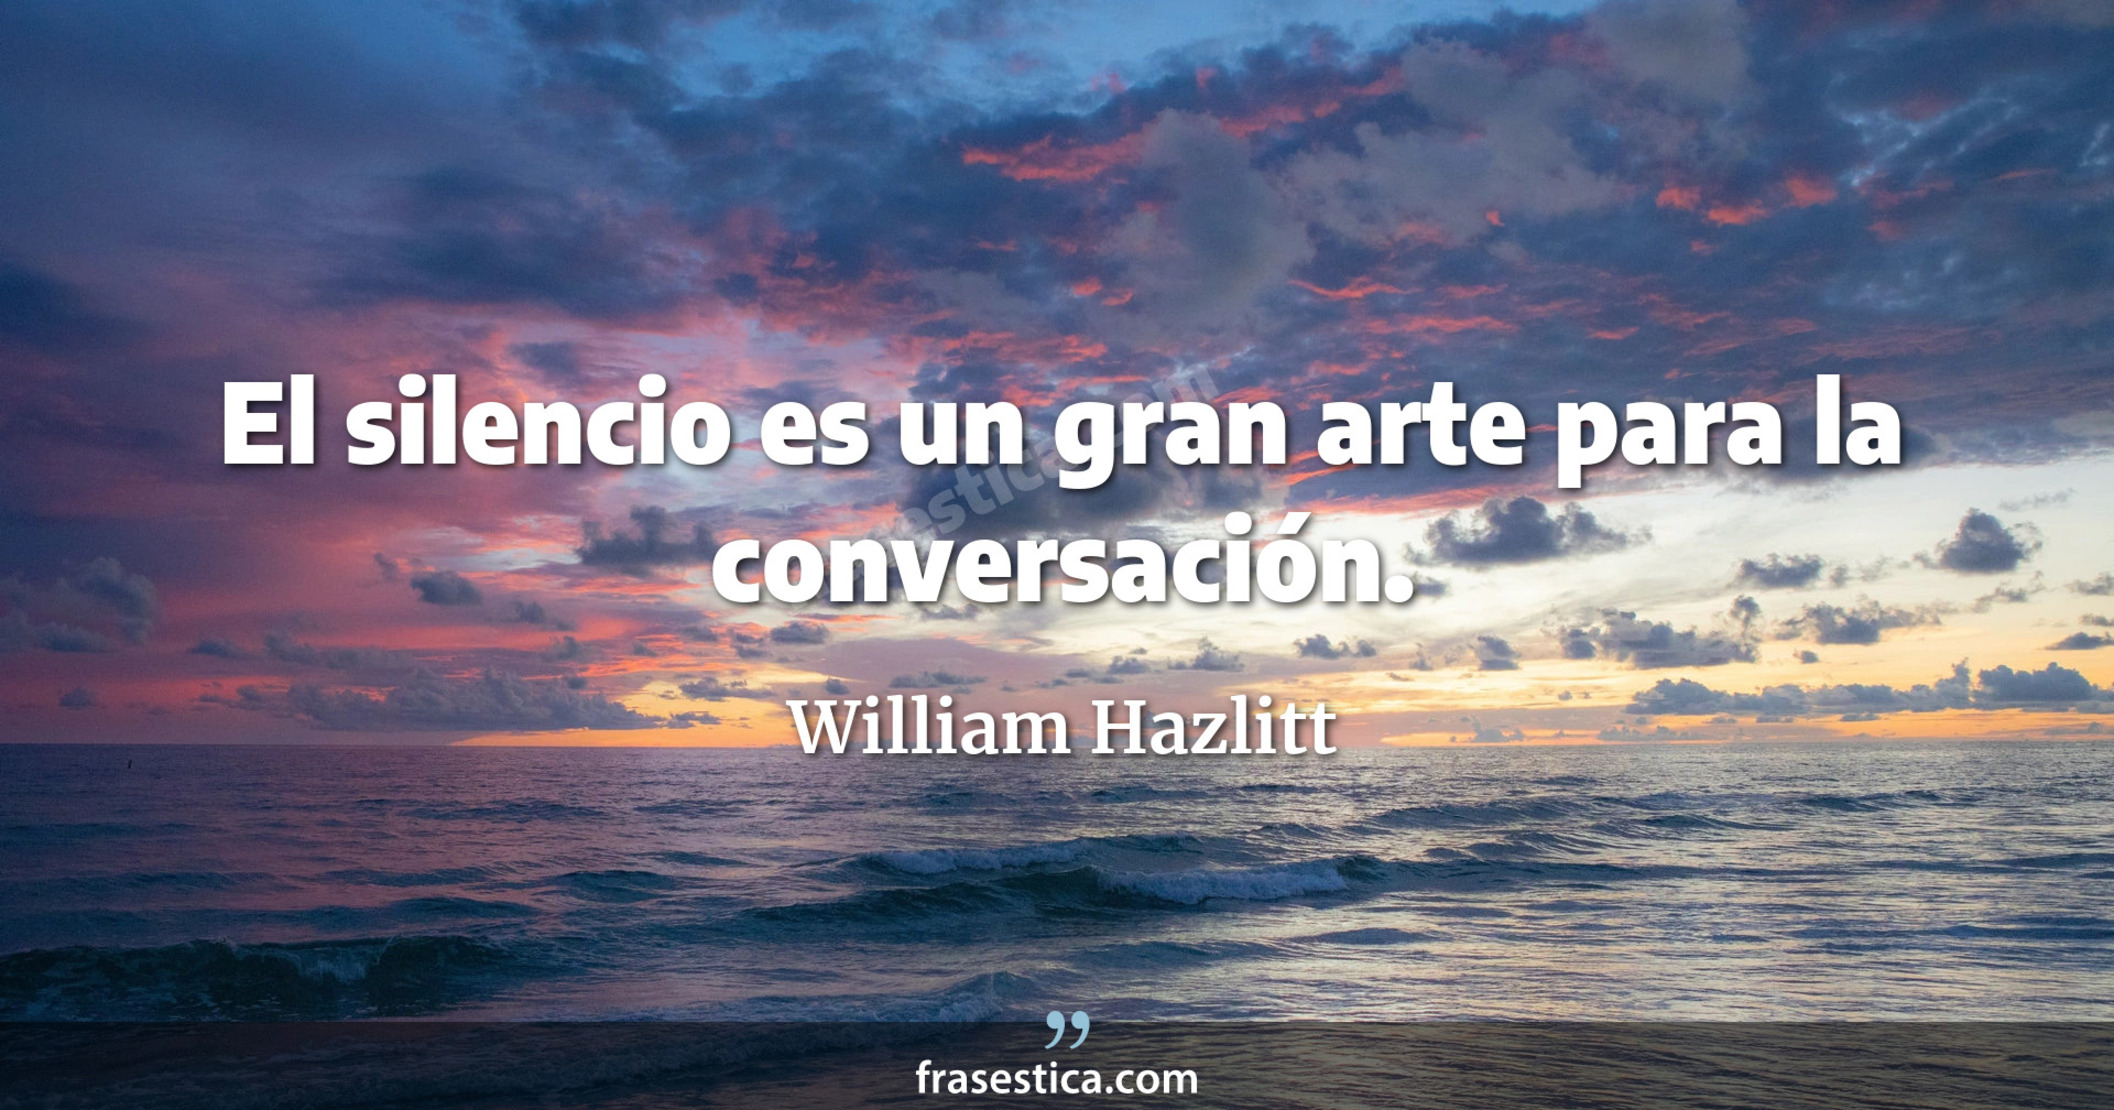 El silencio es un gran arte para la conversación. - William Hazlitt